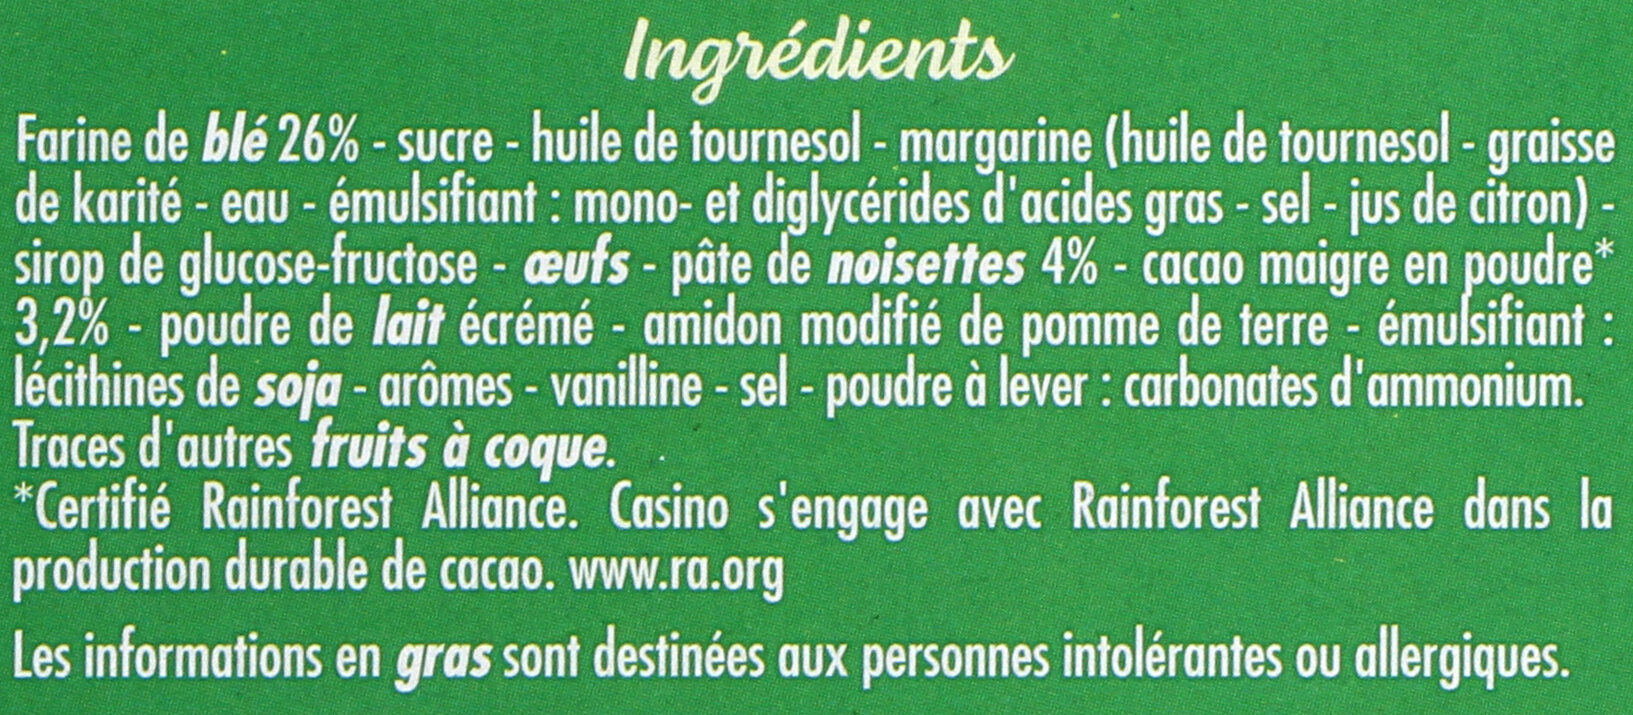 Sablés fourrés goût cacao noisette - المكونات - fr